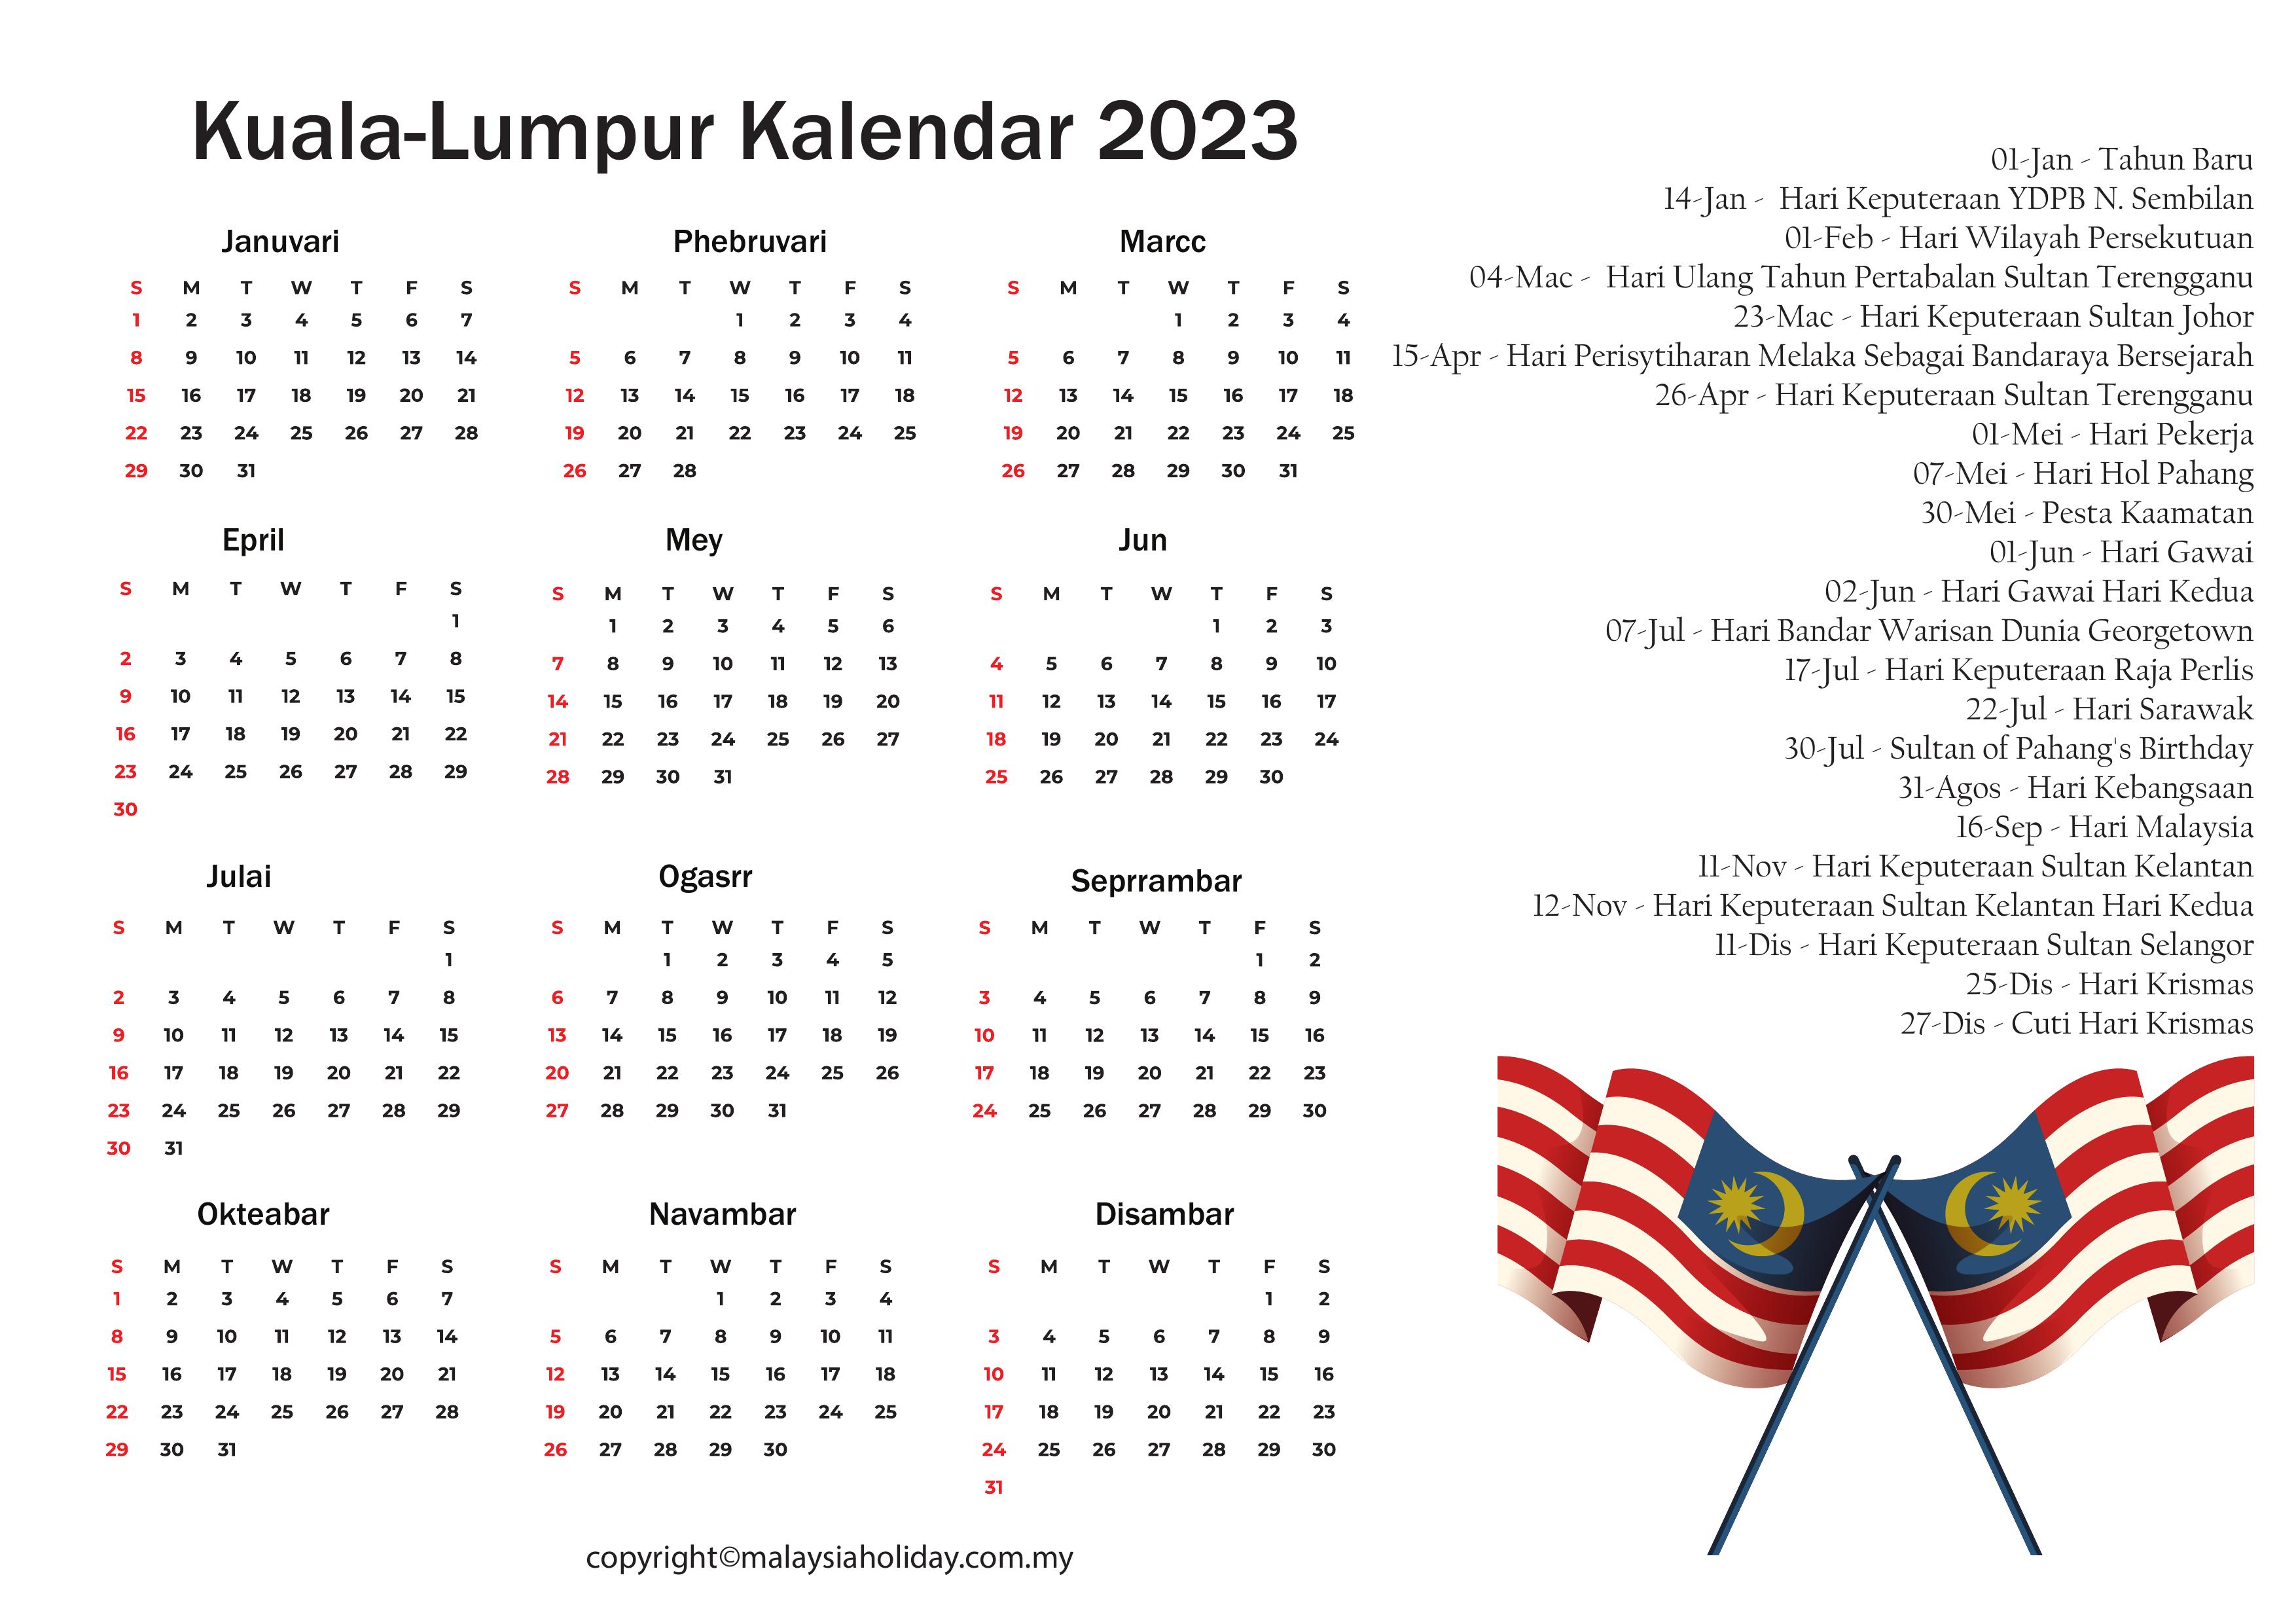 Kuala Lumpur Cuti Umum 2023